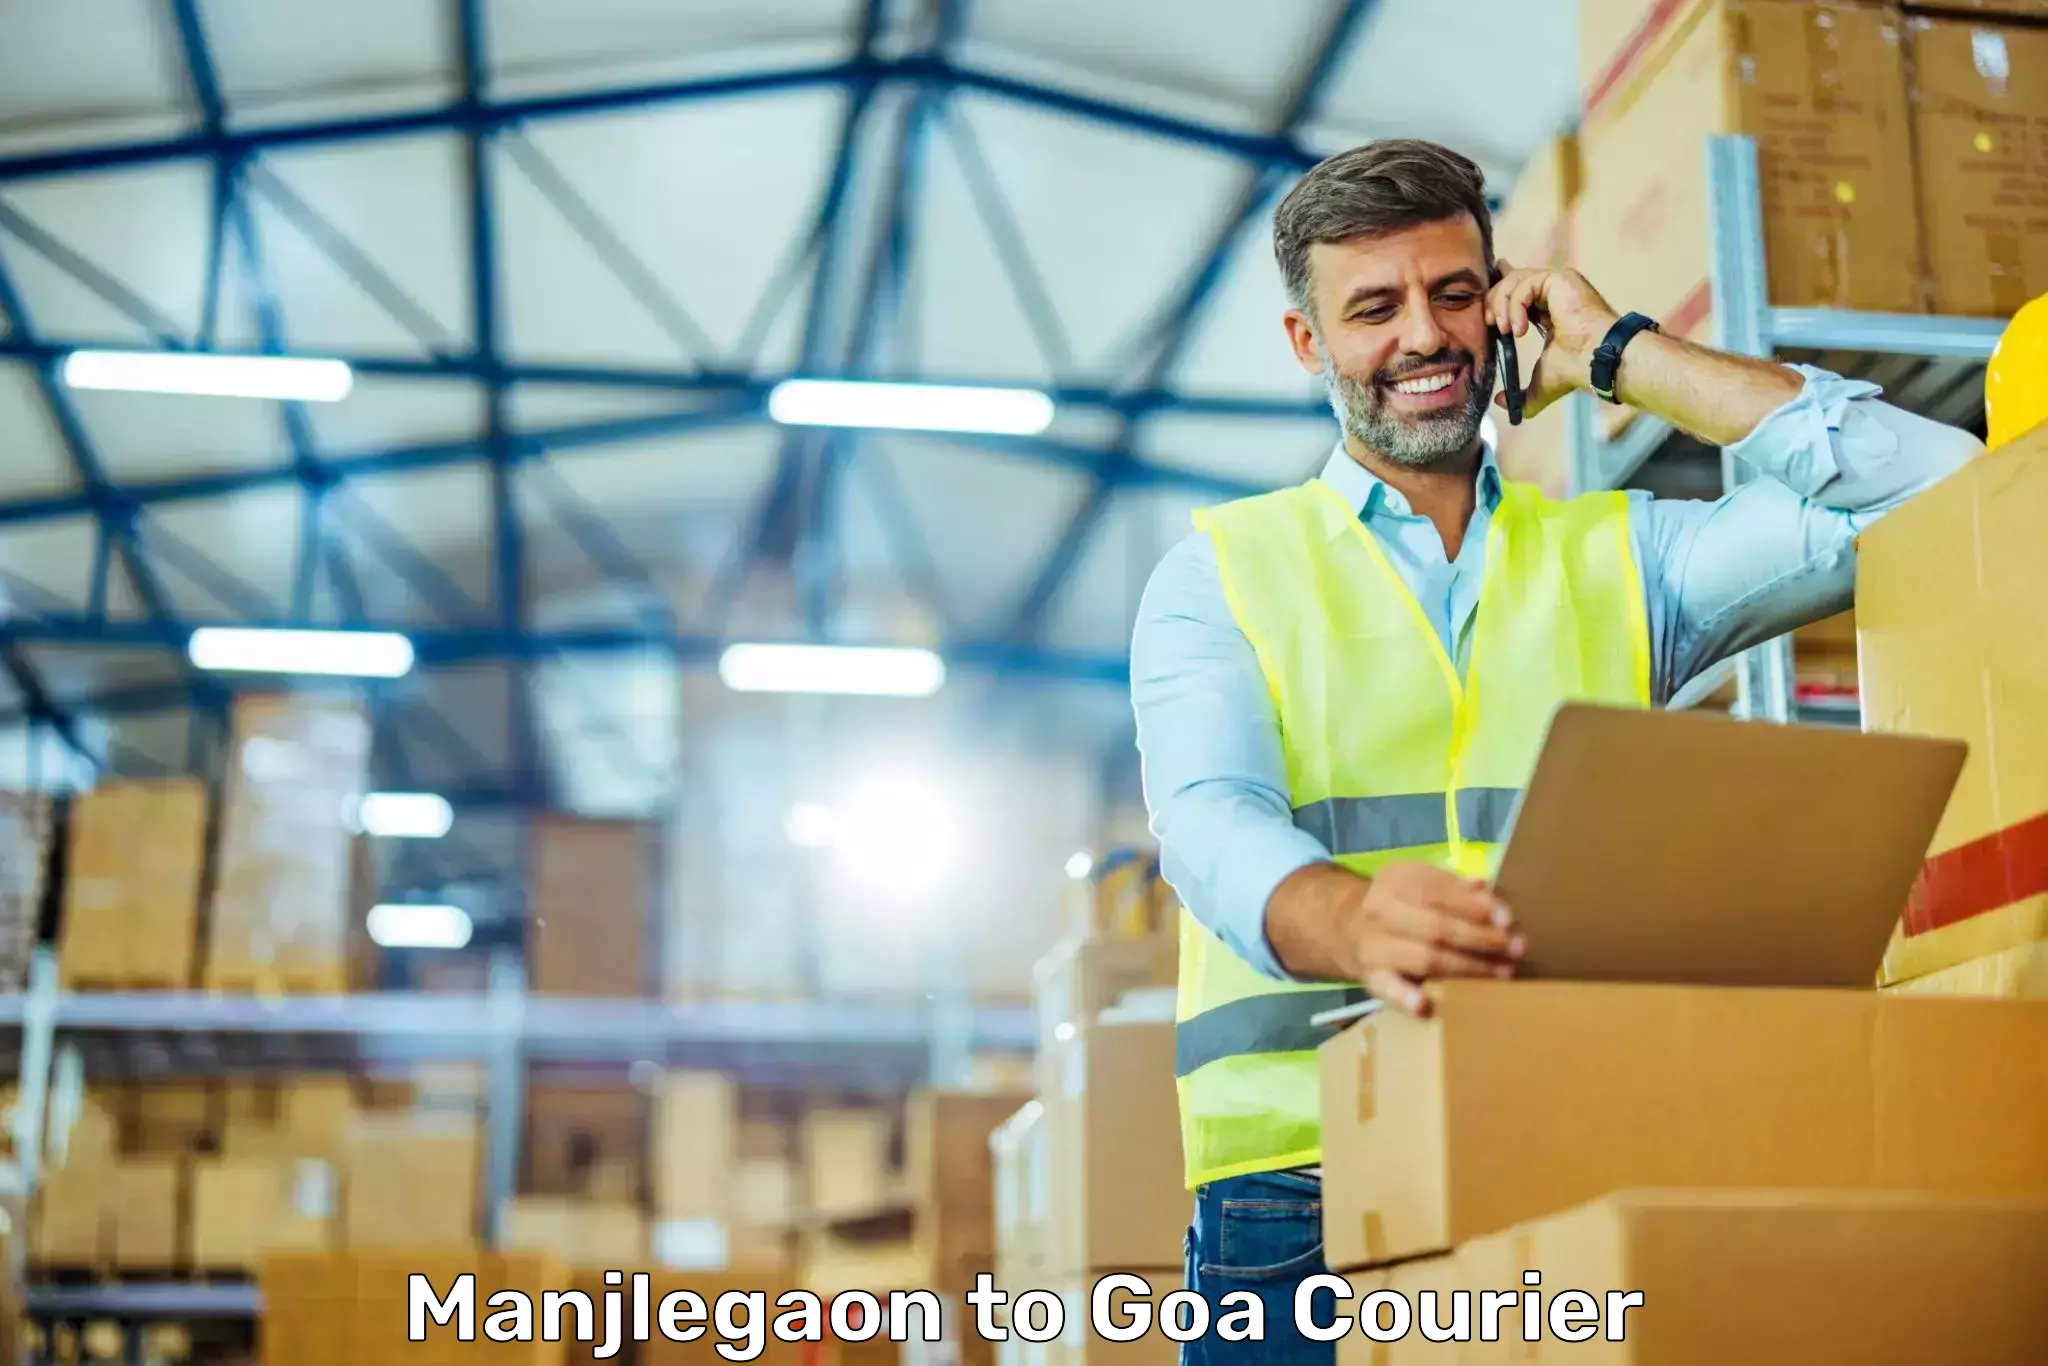 User-friendly delivery service in Manjlegaon to Ponda